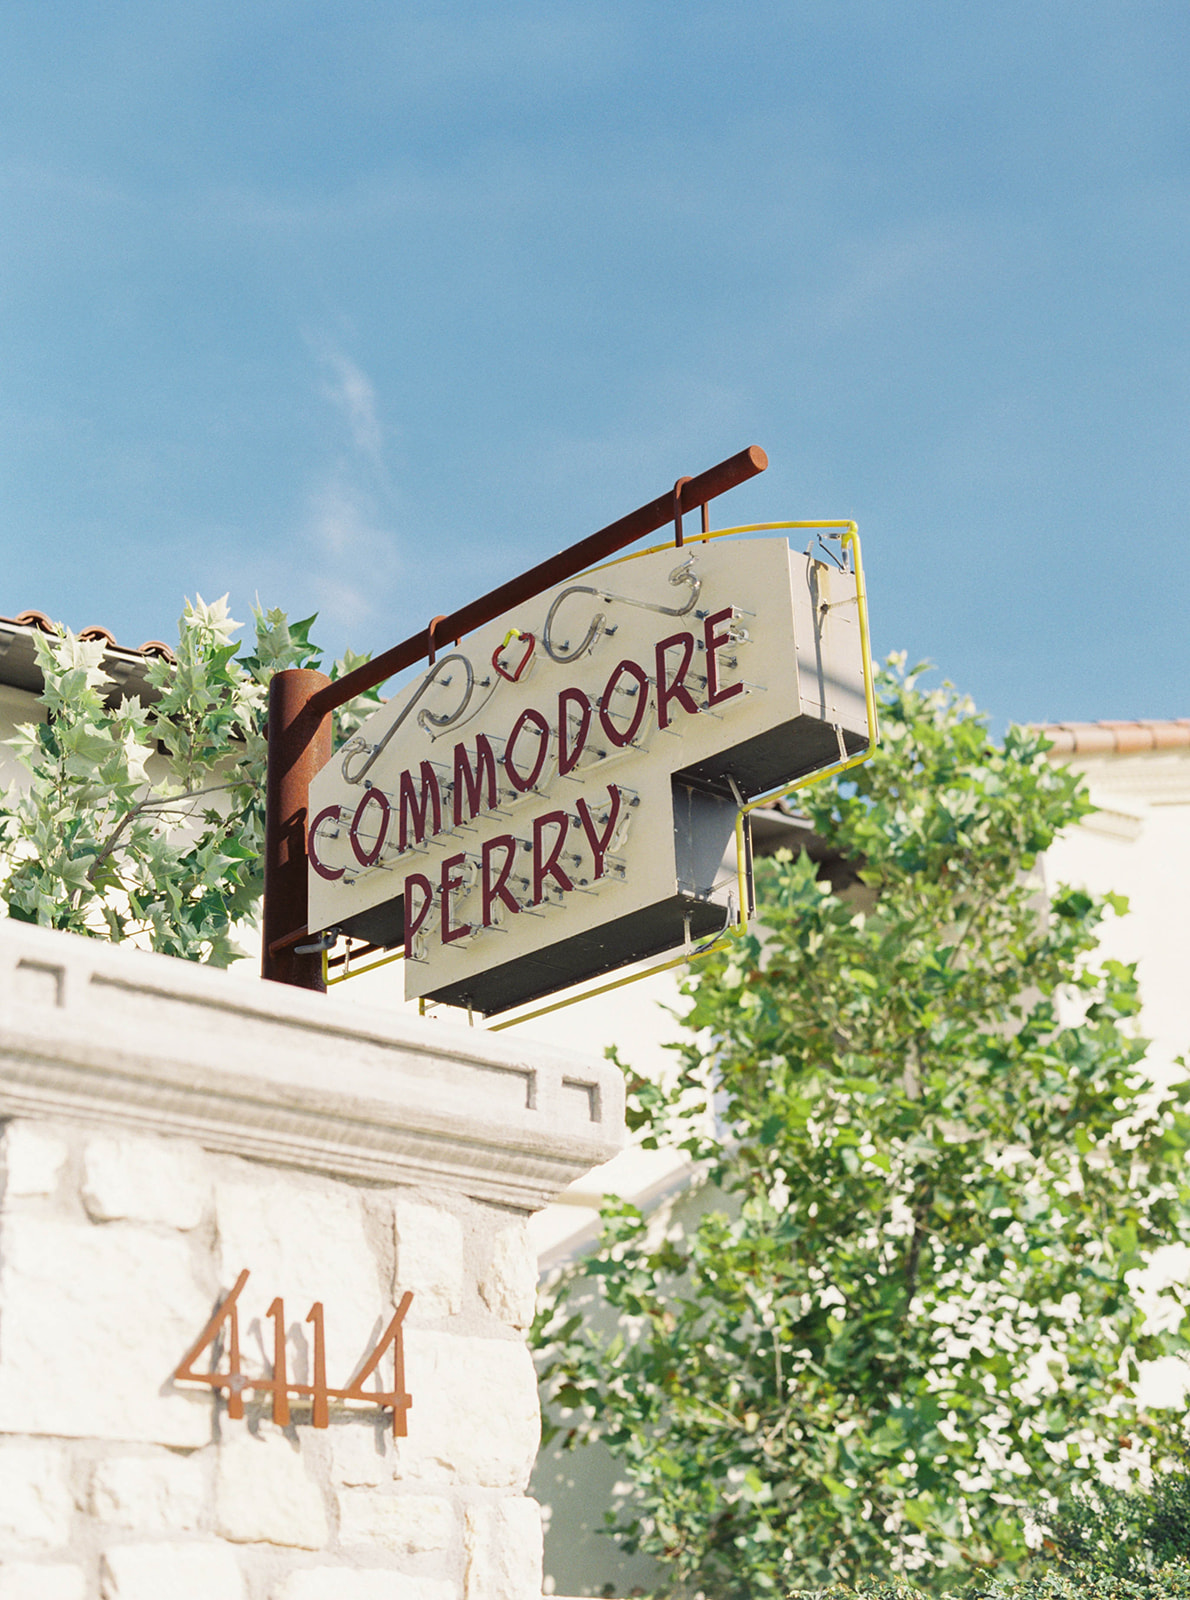 Commodore Perry Estate Wedding Venue in Austin Texas